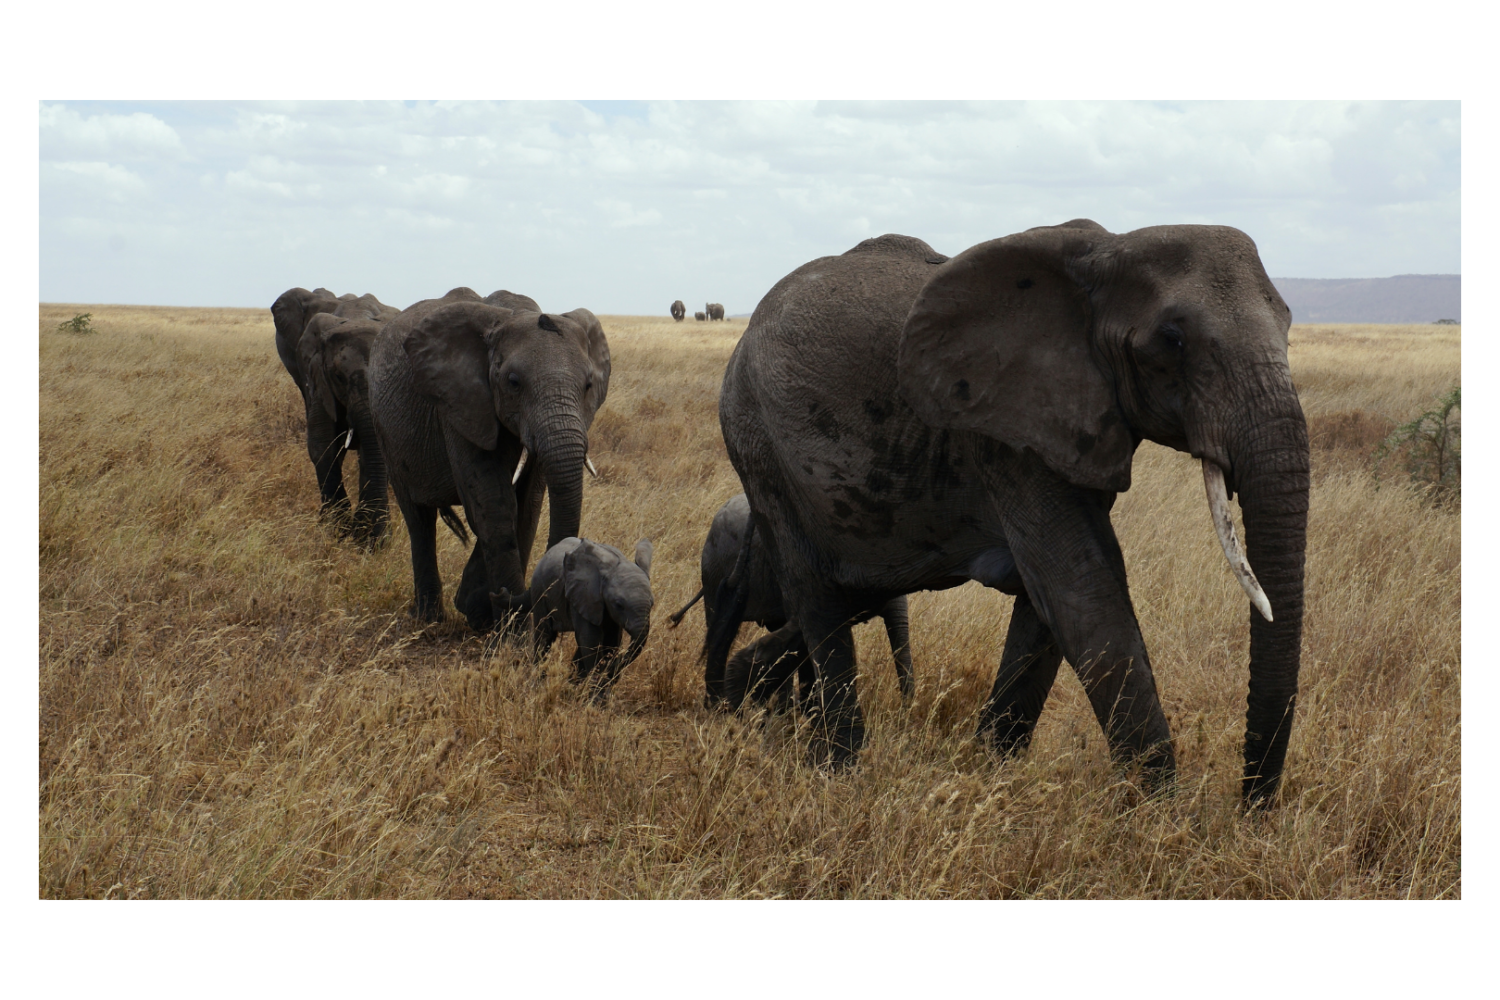 Elephants in ngorongoro national park